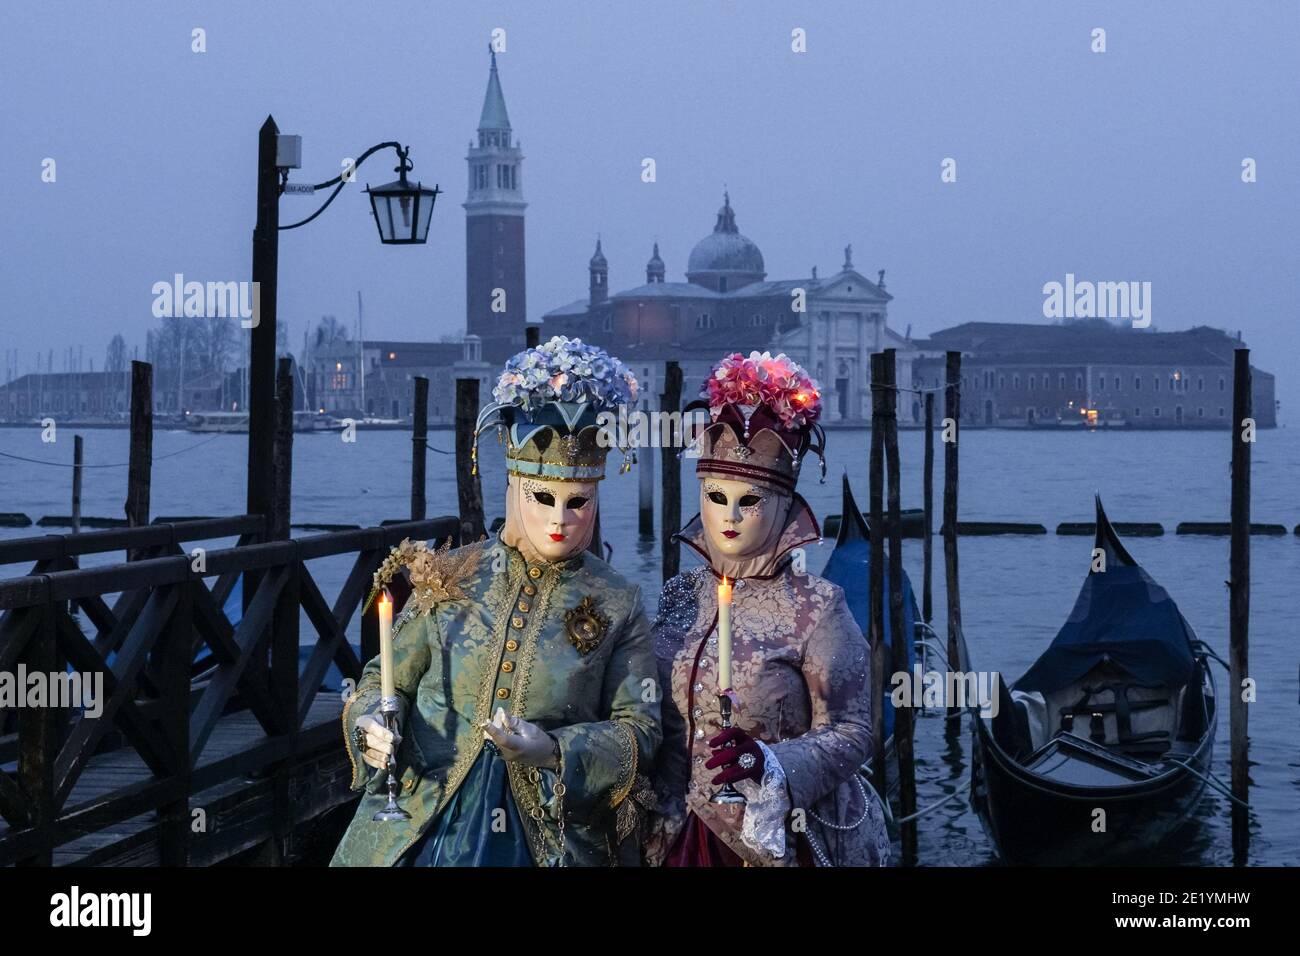 Frau in traditionell dekoriertem Kostüm und Maske während des Karnevals in Venedig gekleidet mit dem Kloster San Giorgio im Hintergrund Venedig, Italien Stockfoto